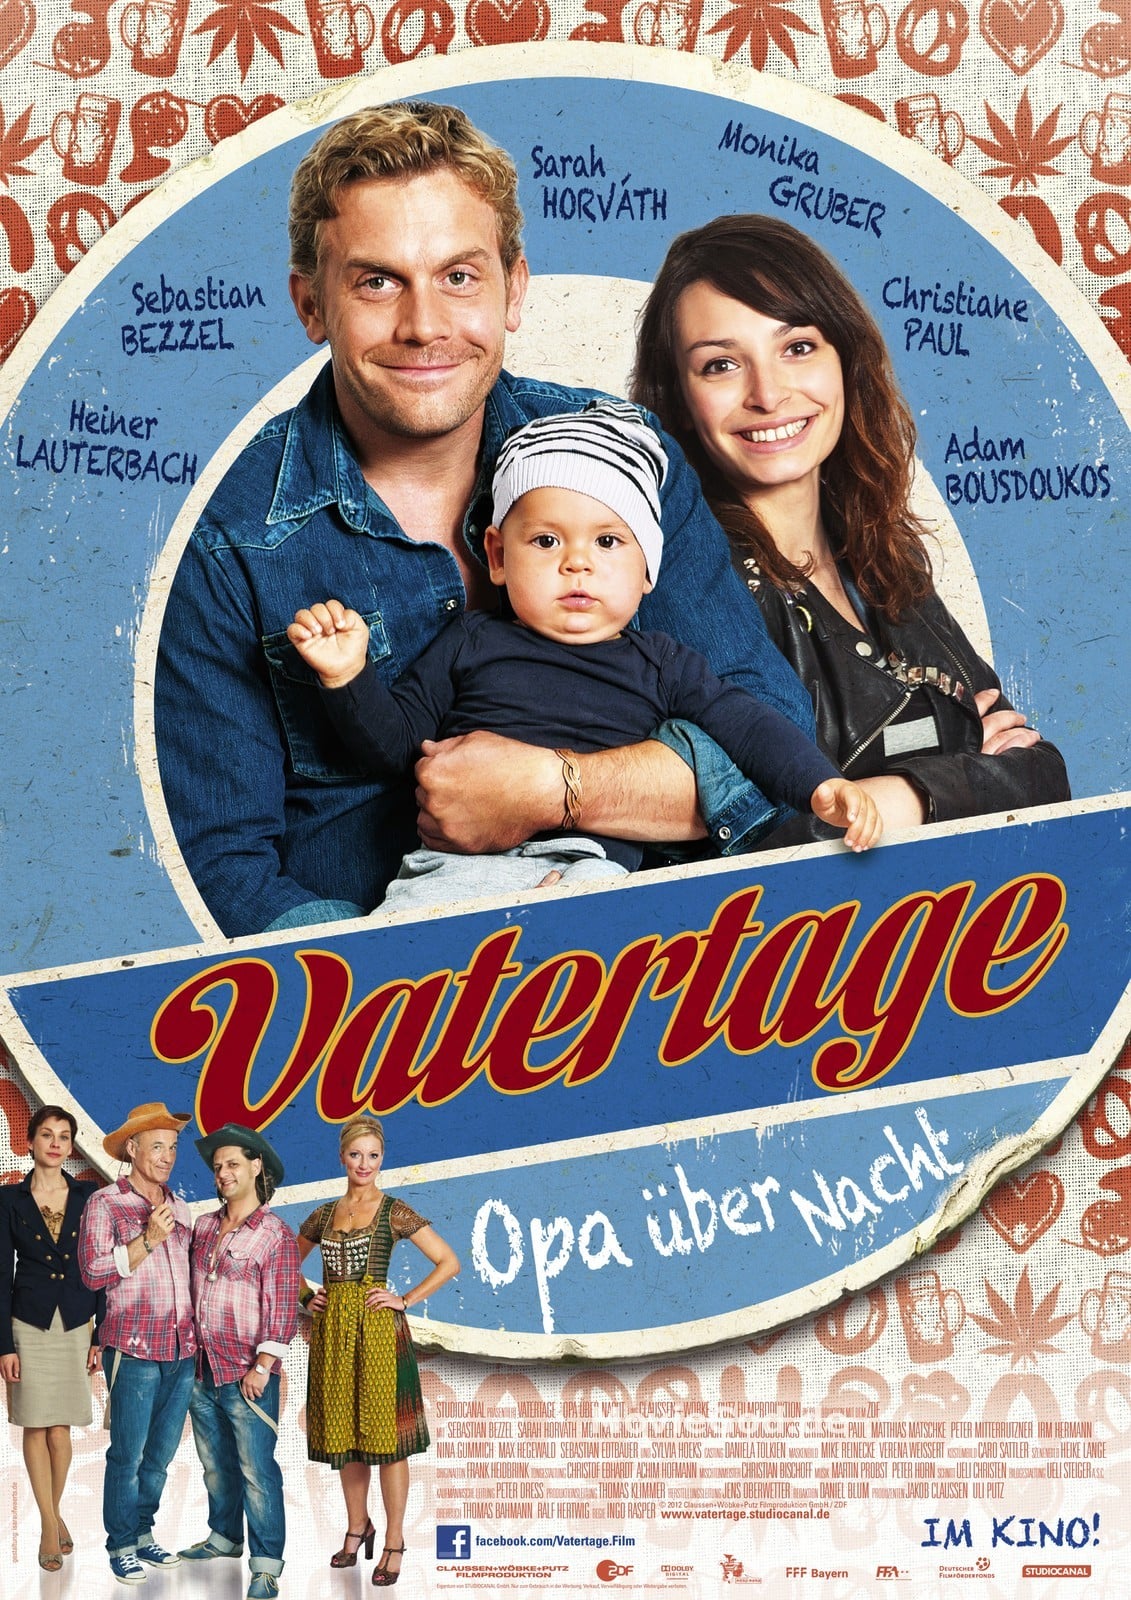 Plakat von "Vatertage - Opa über Nacht"